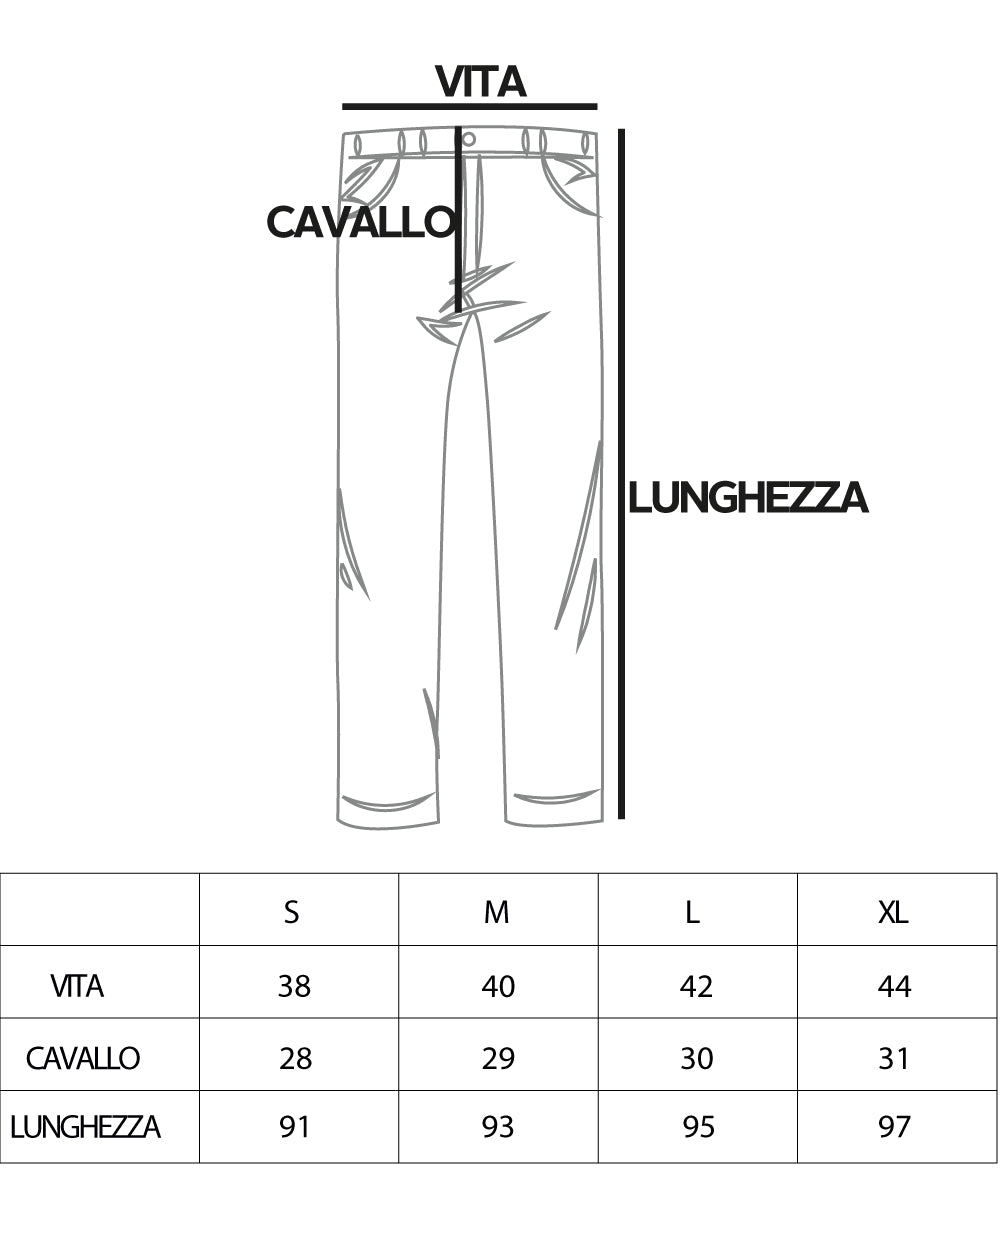 Pantaloni Uomo Lino Tasca America Abbottonatura Allungata Classico Elegante Bianco GIOSAL-P5260A